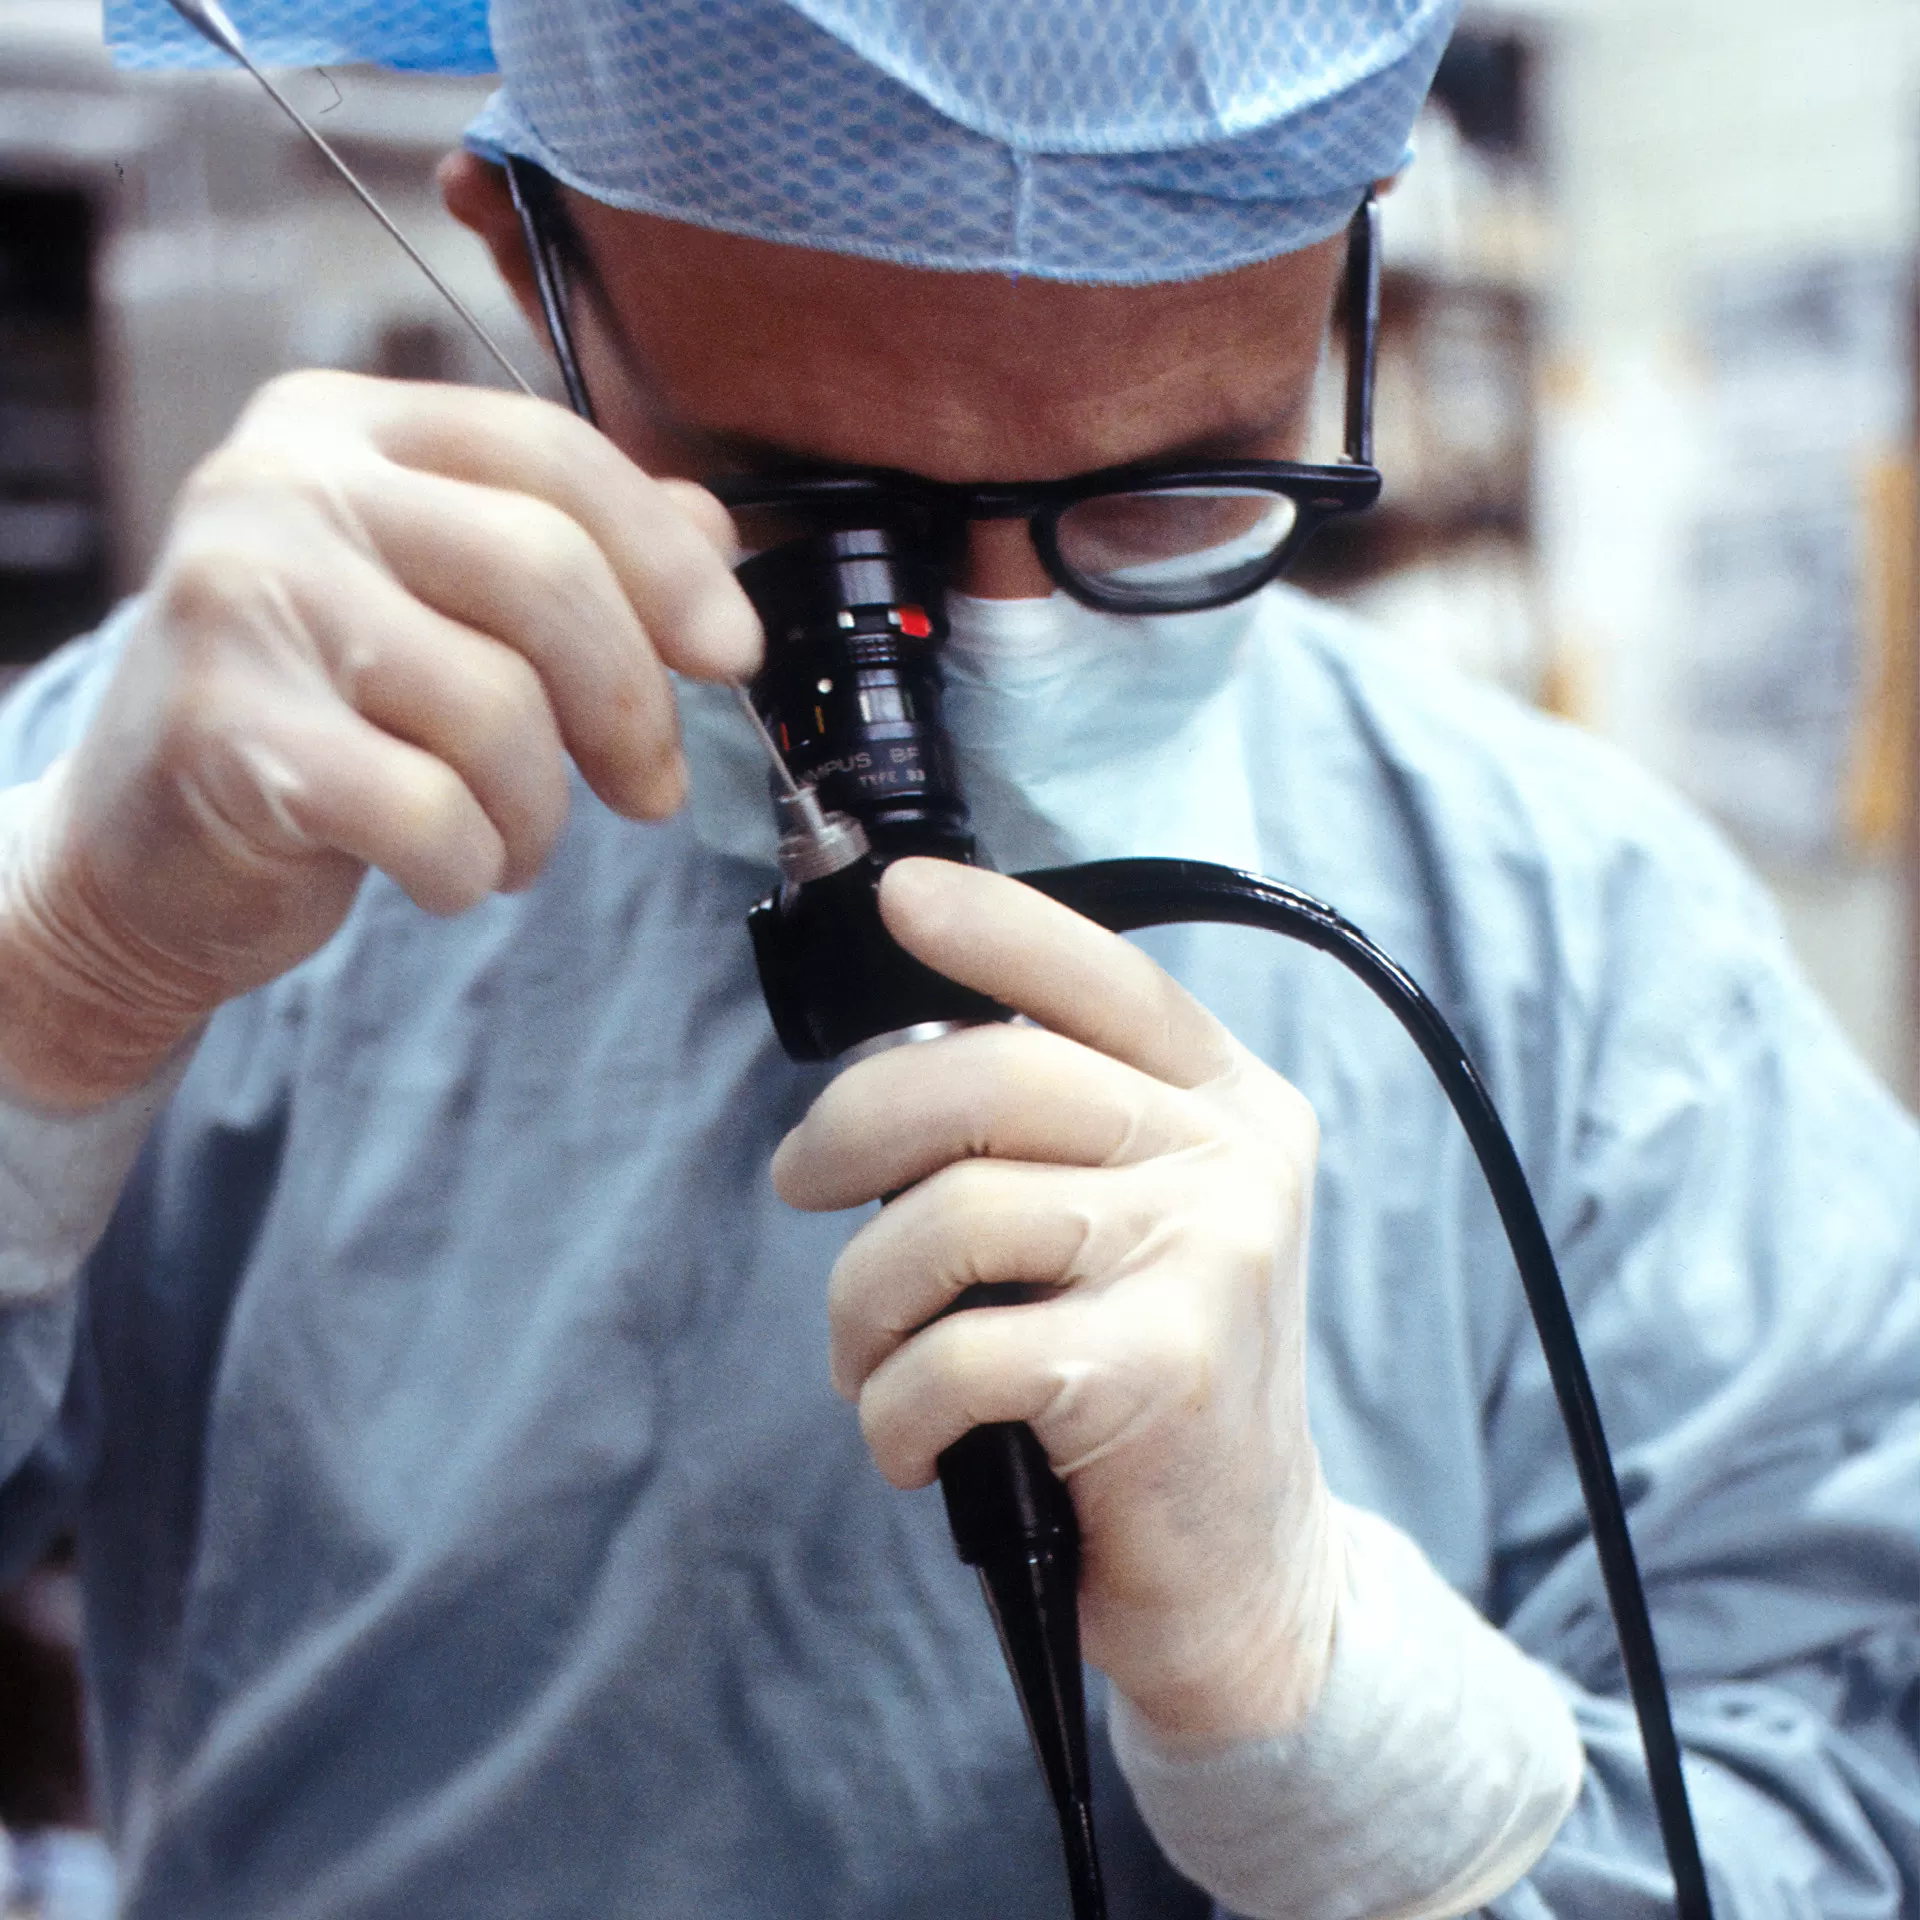 Ein Arzt verwendet ein Bronchoskop: Mittels flexiblem Schlauch mit einem Licht kann er in die Luftröhre eines Patienten hineinsehen.